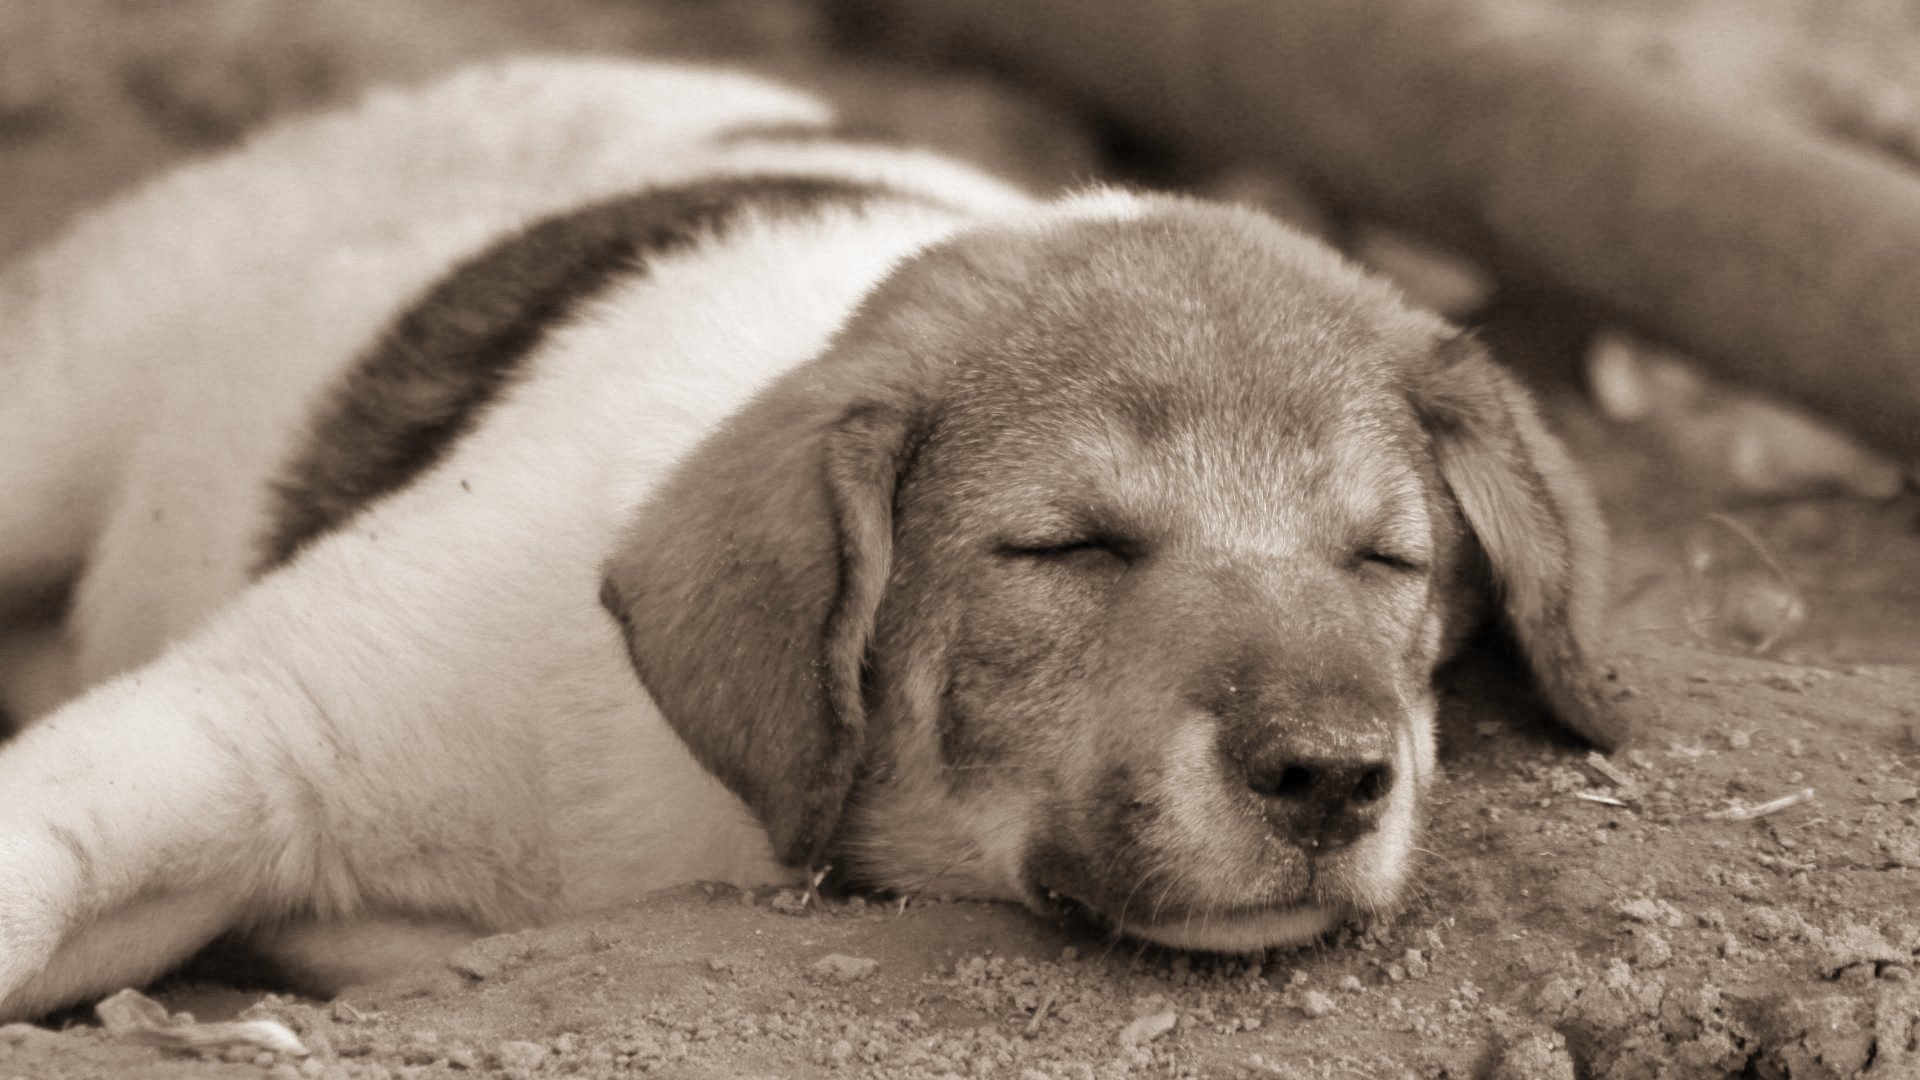 A sleeping puppy 1